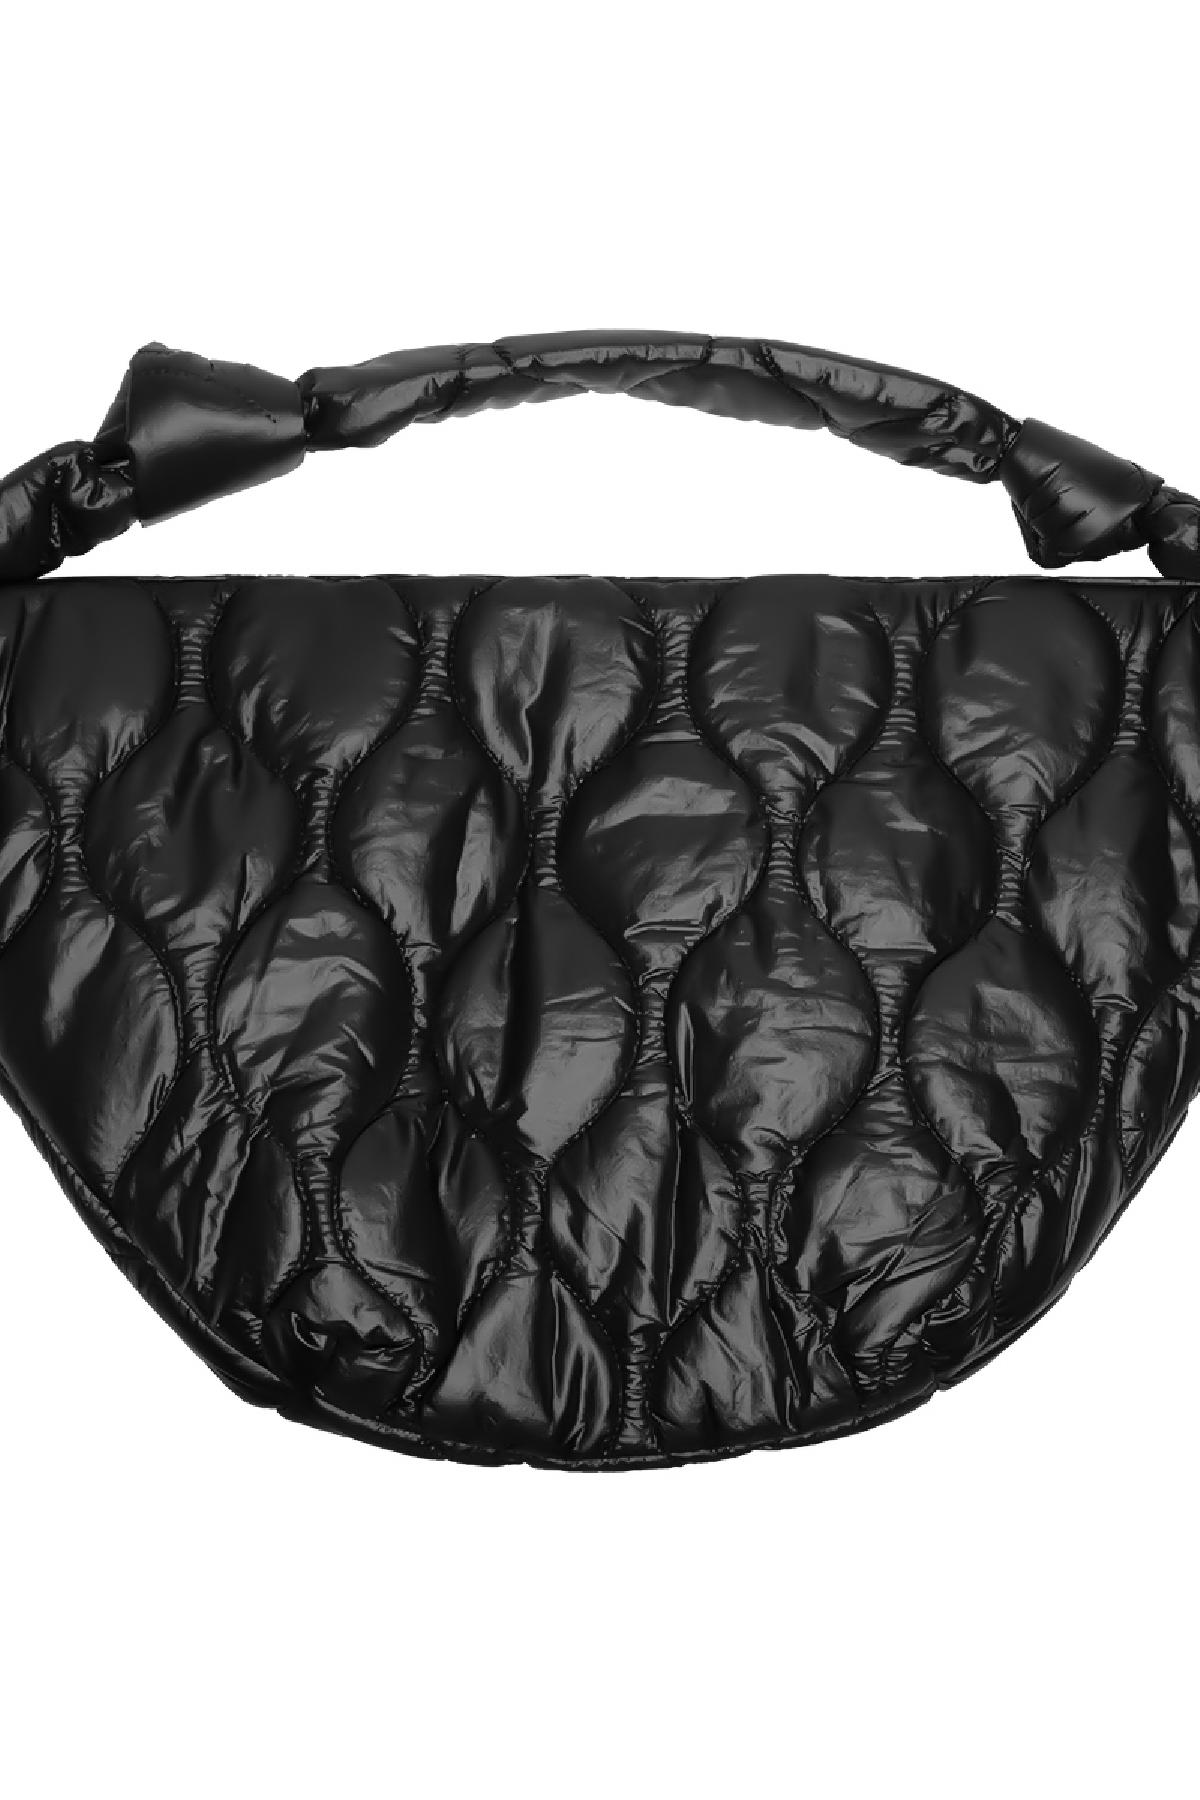 Padded shoulder bag Black Polyester h5 Picture3